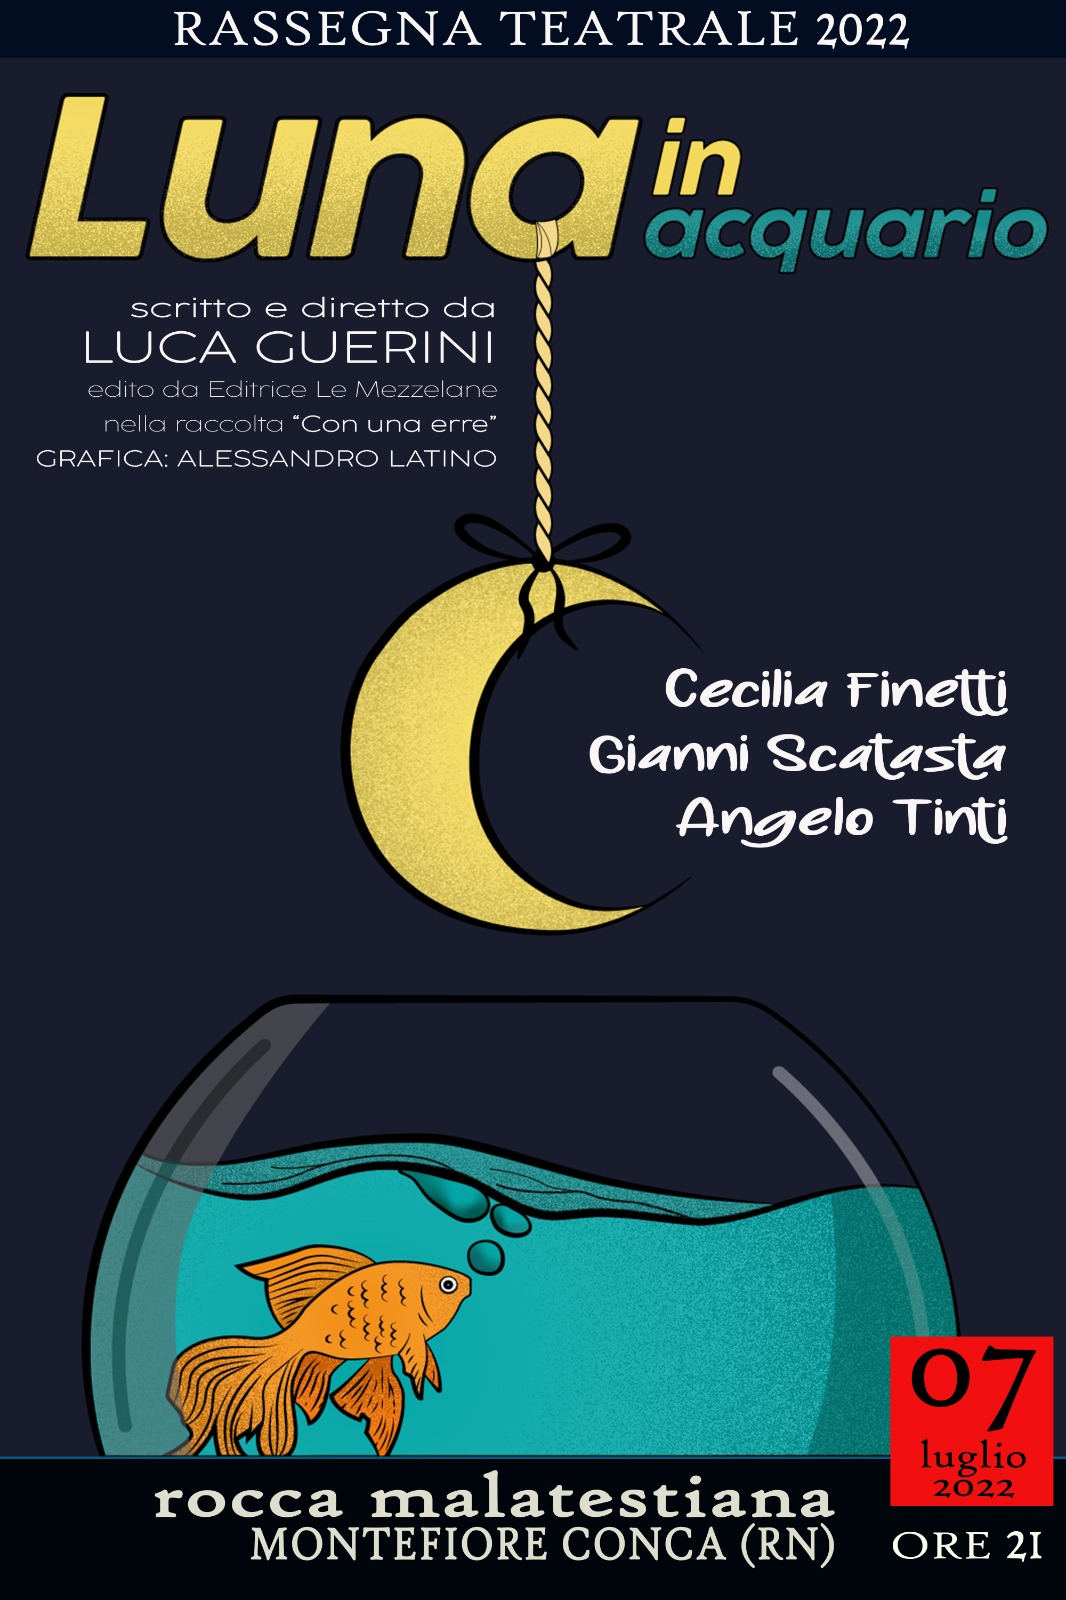 Luna in Acquario Eventi Montefiore Conca Festival Borghi belli Italia 2022 Luca Guerini